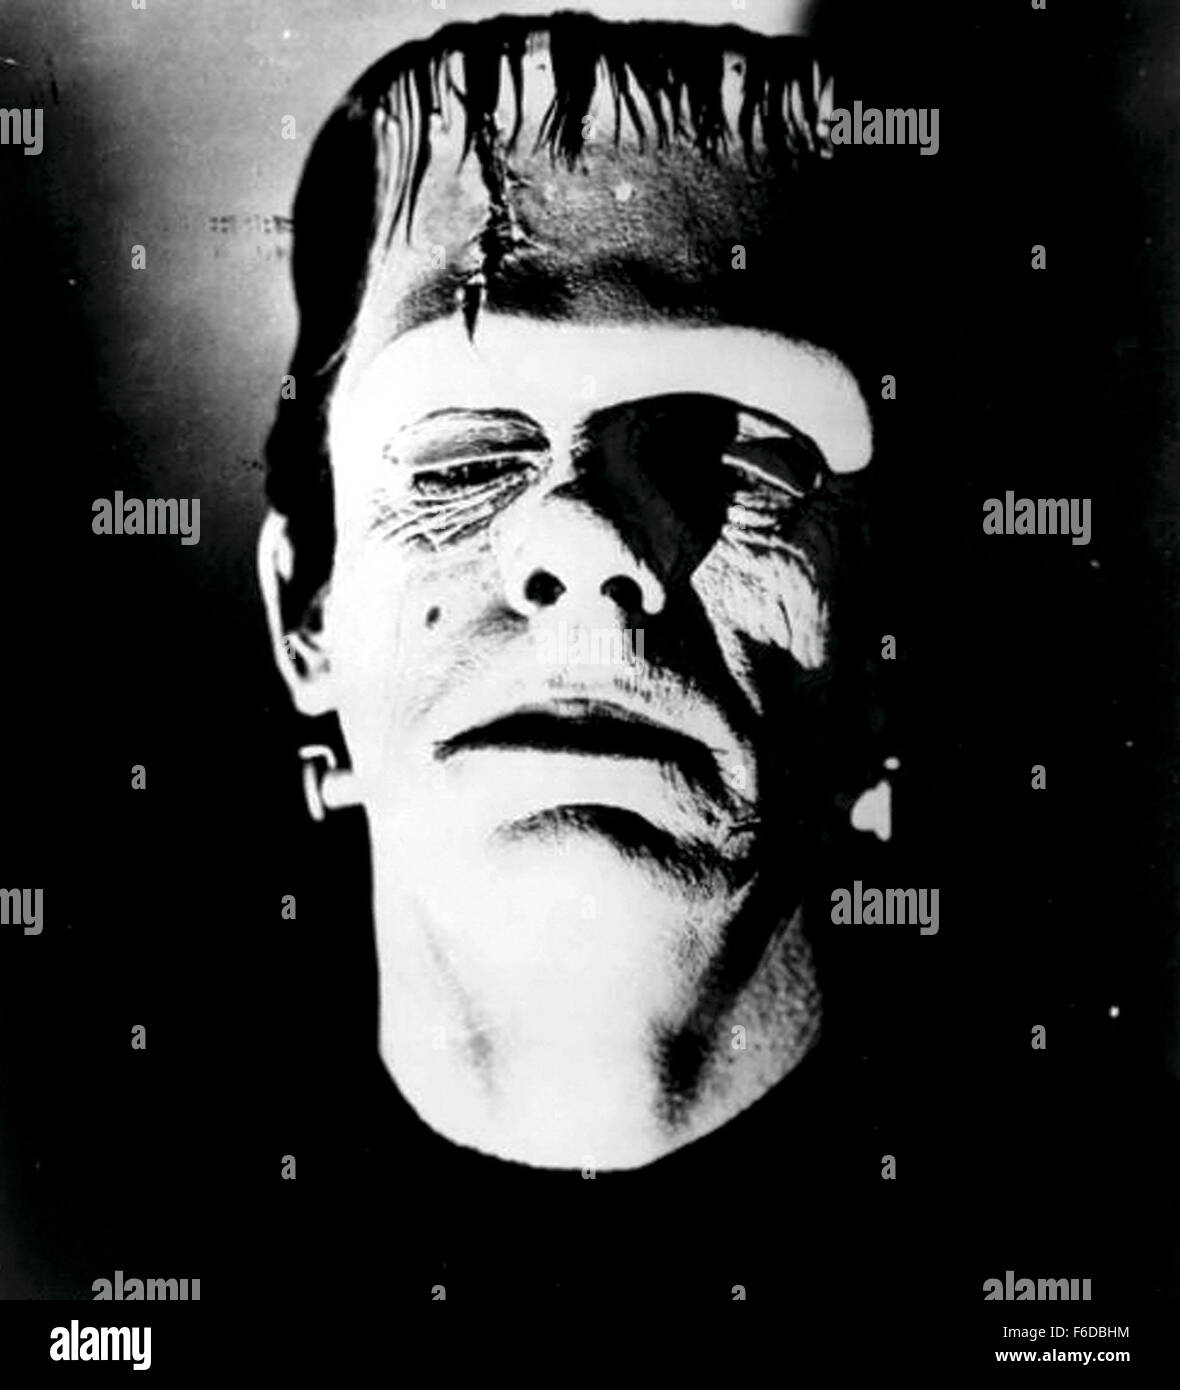 Date de sortie : 1944. Titre du film : House of Frankenstein. Sur la photo : GLENN aussi étrange que le monstre dans le drame, science-fiction, film d'horreur. Banque D'Images